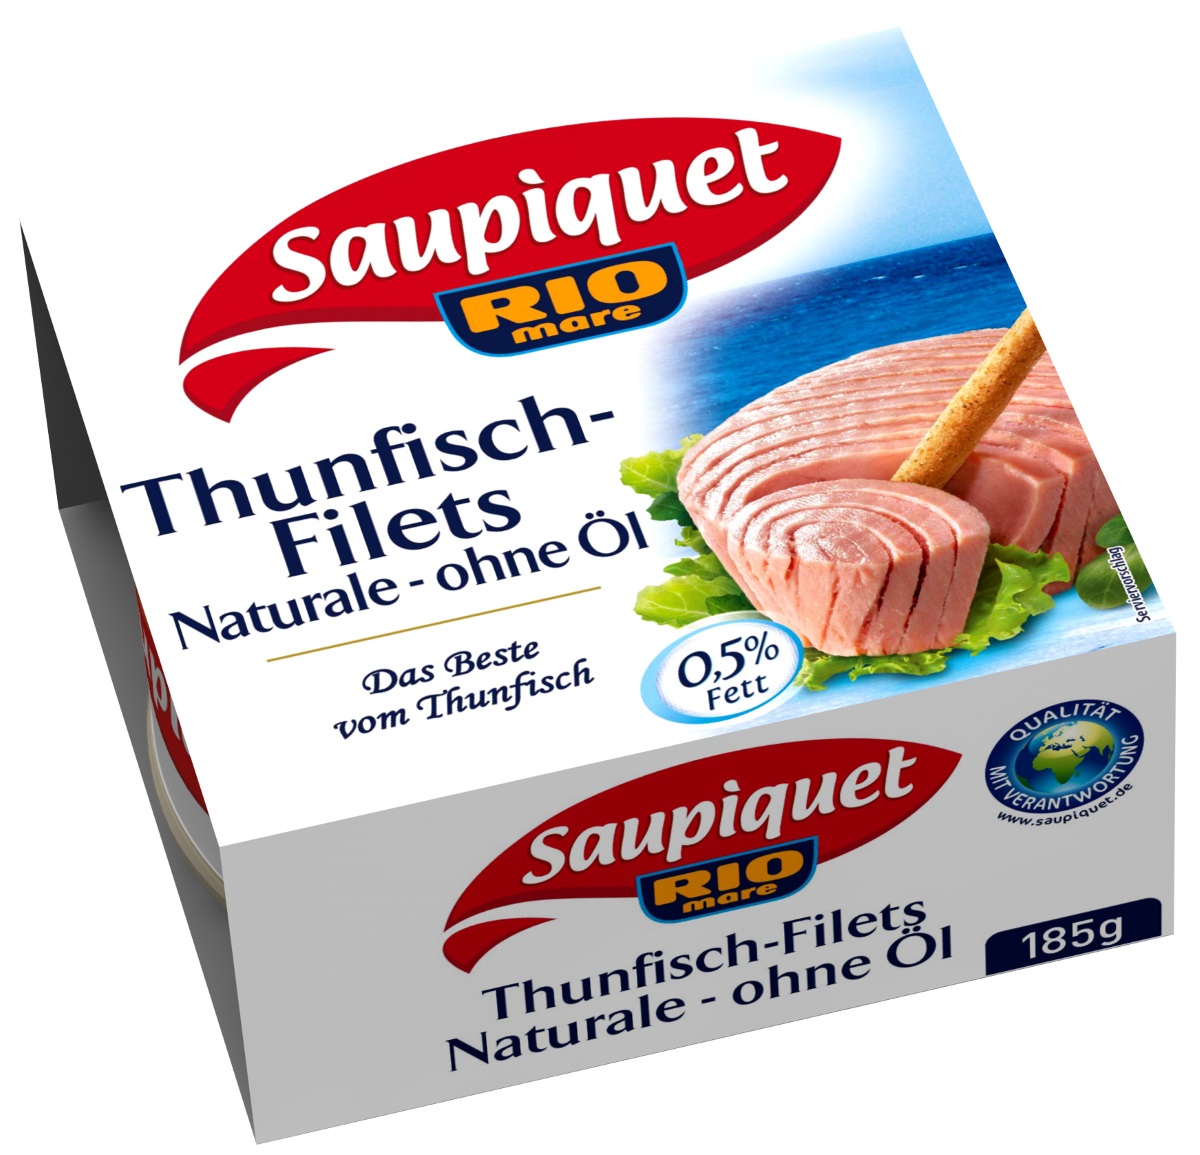 Saupiquet Thunfischfilets Naturale ohne Öl 185G